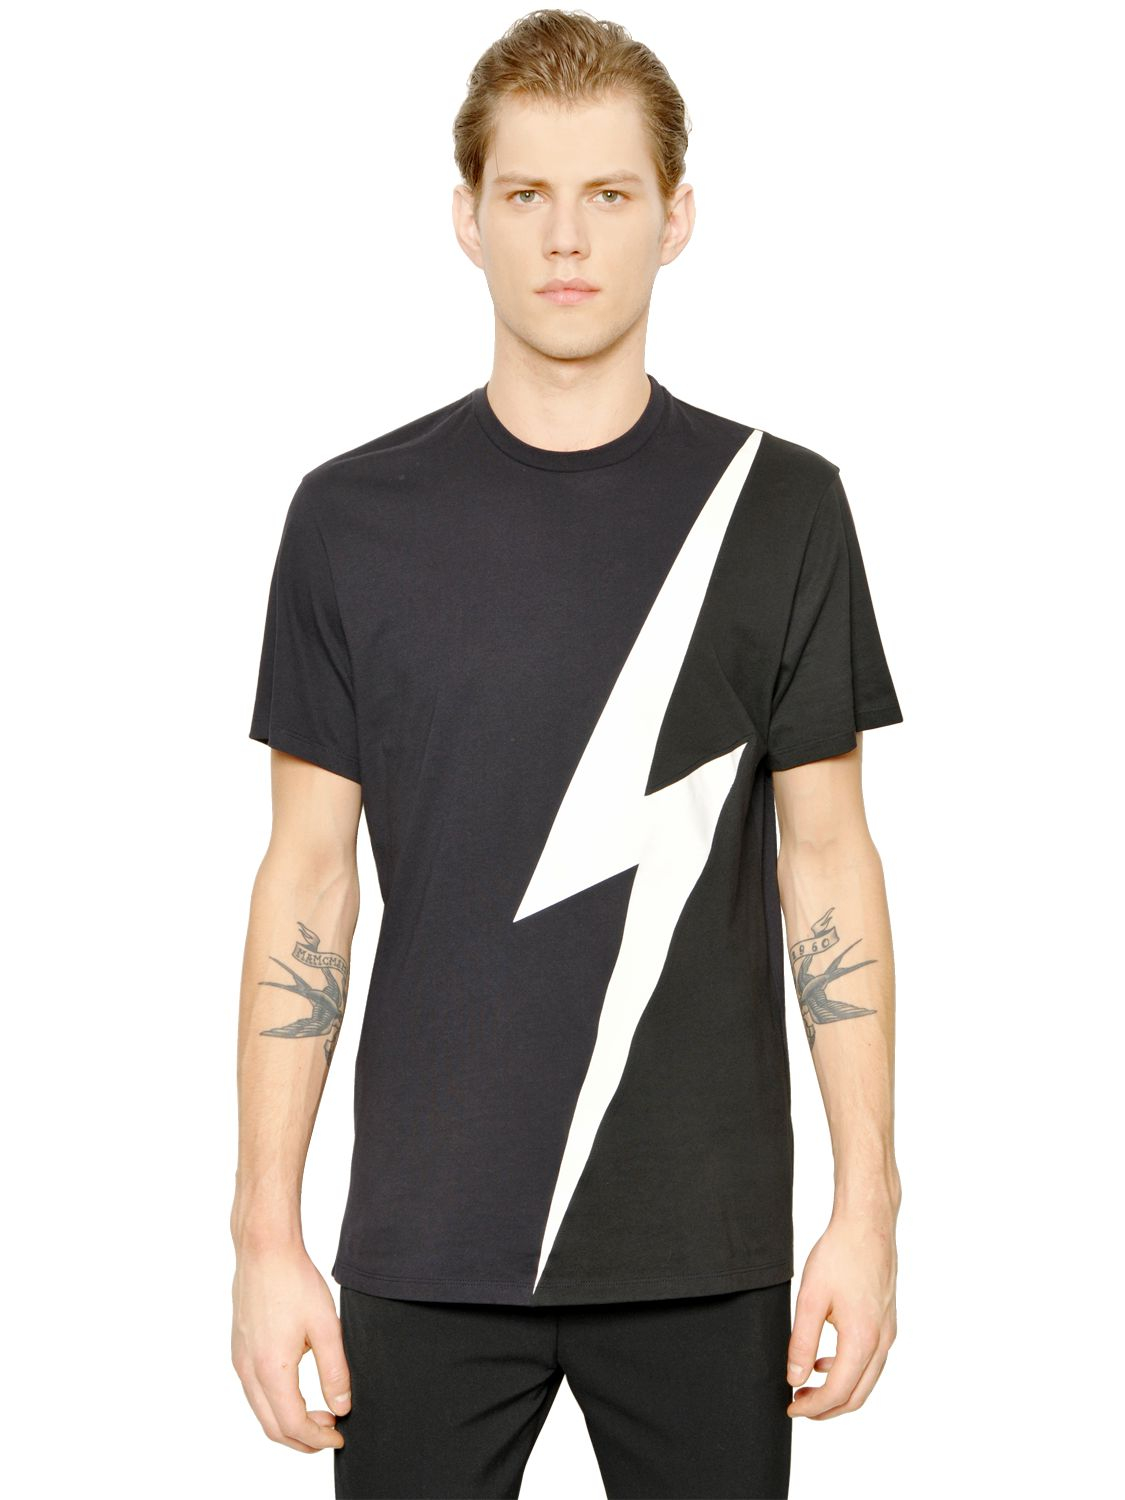 Lyst - Neil Barrett Black Lightning Bolt Printed T-shirt in Black for Men